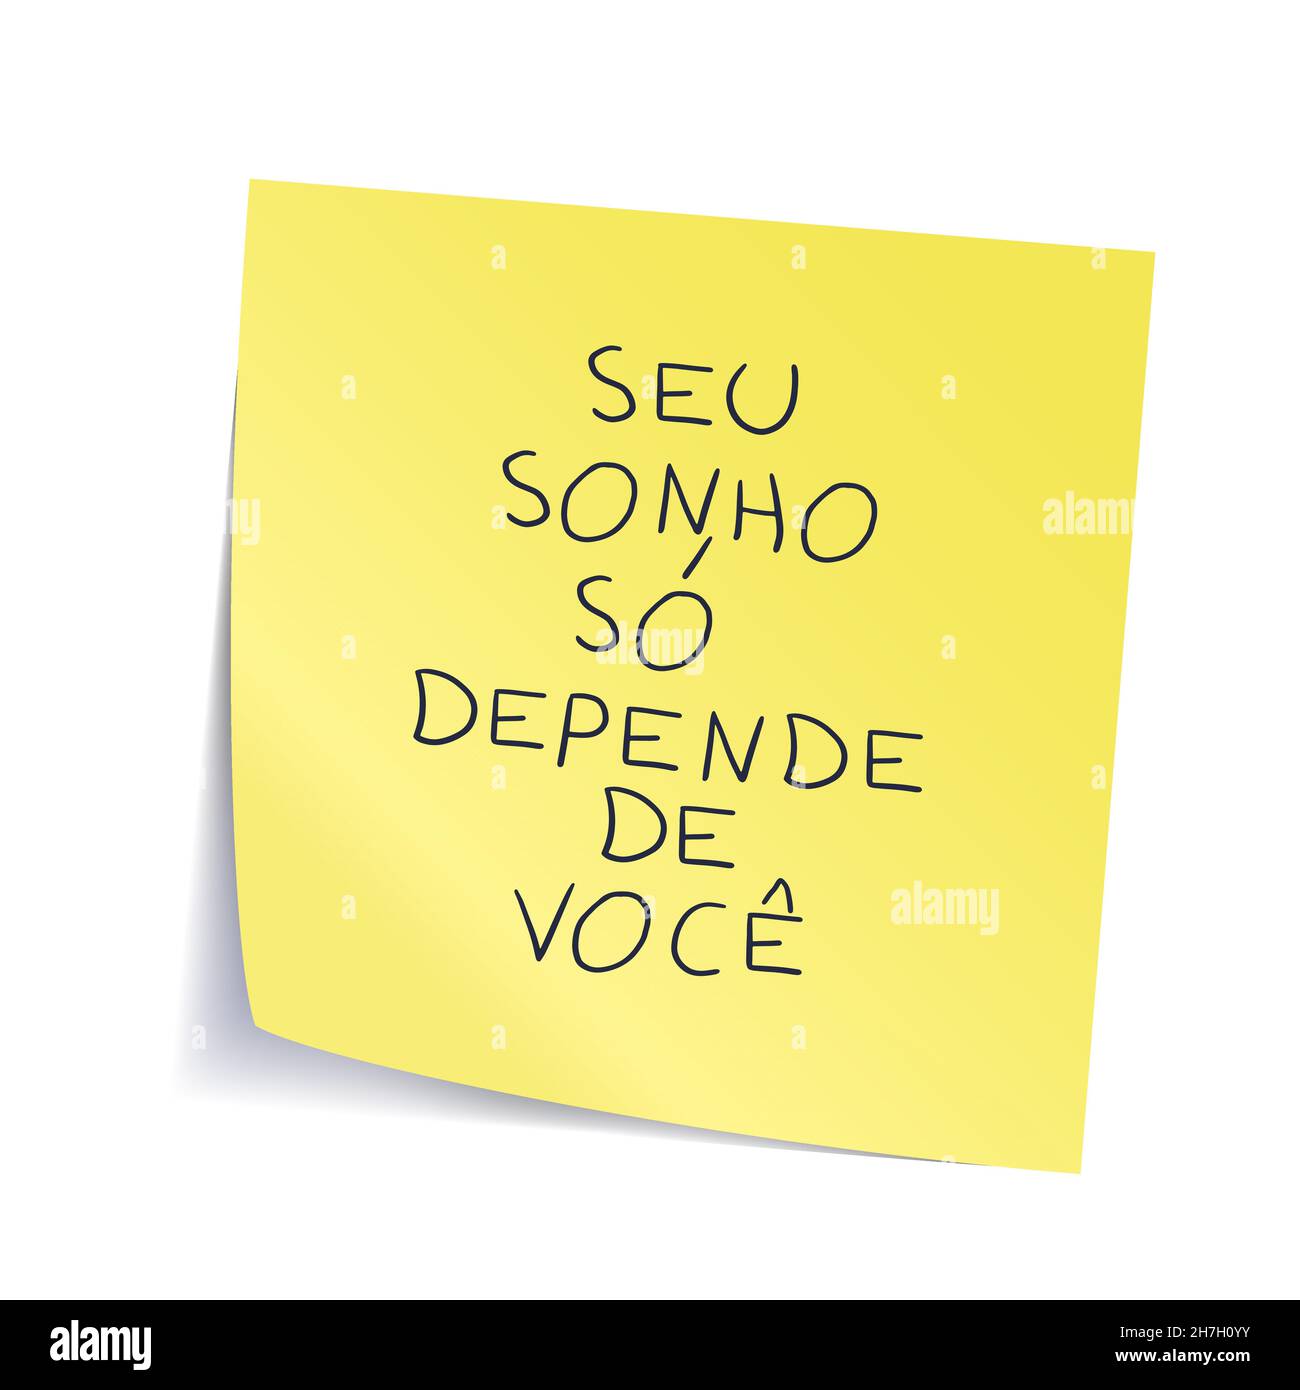 Autocollant jaune de motivation manuscrit en portugais brésilien.Traduction - vous rêvez dépend juste de vous os Illustration de Vecteur